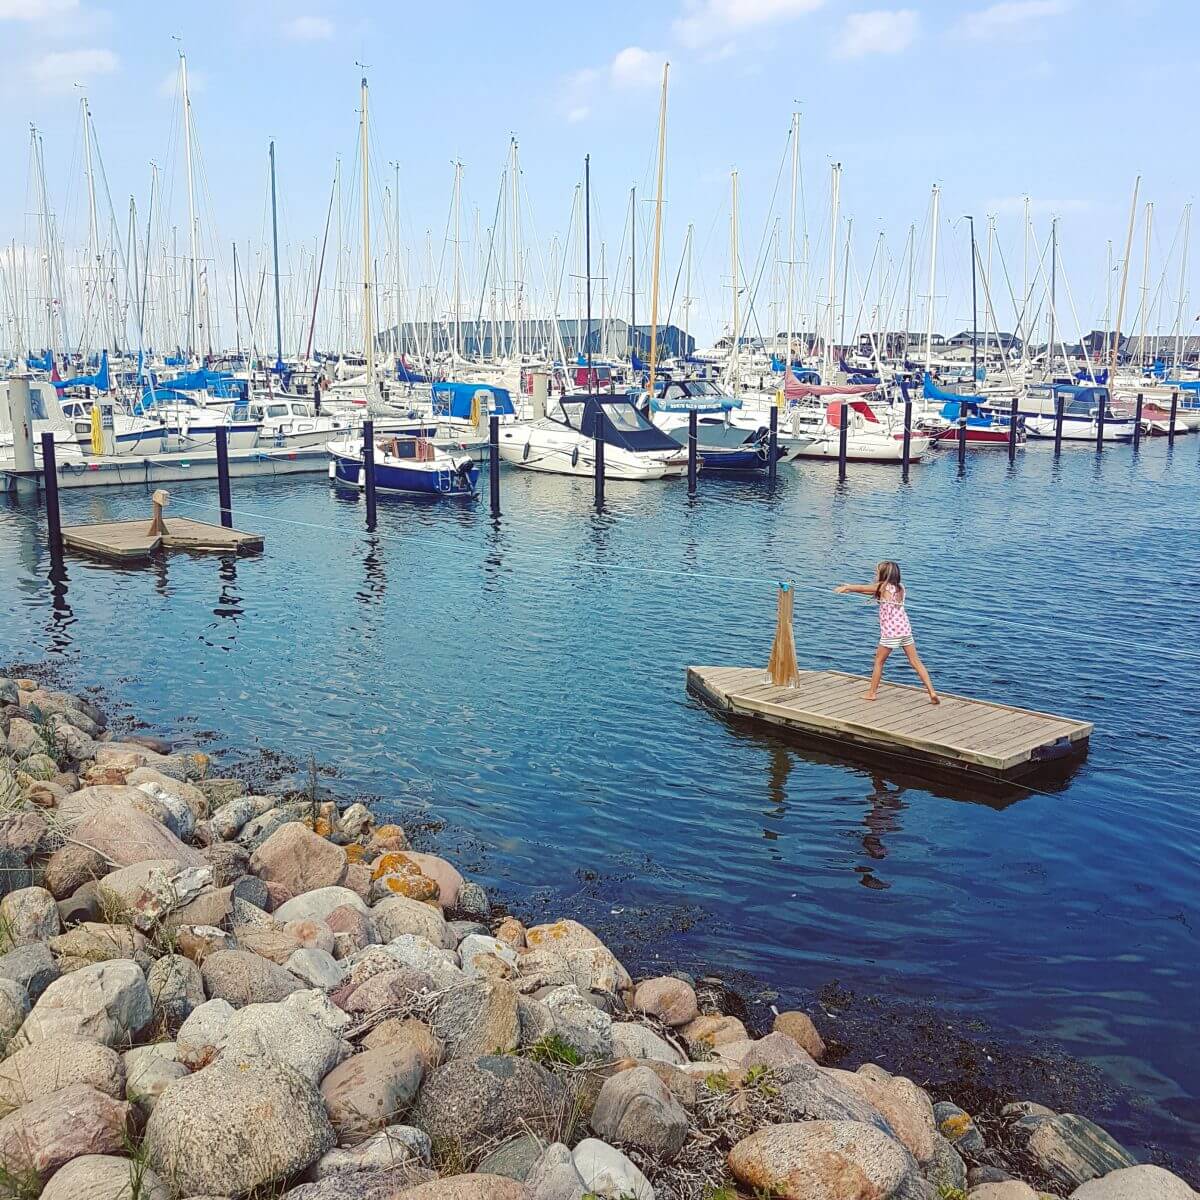 Vakantie met kids: sprookjesachtig Funen in Denemarken - de oude stad Bogense met strand en haven